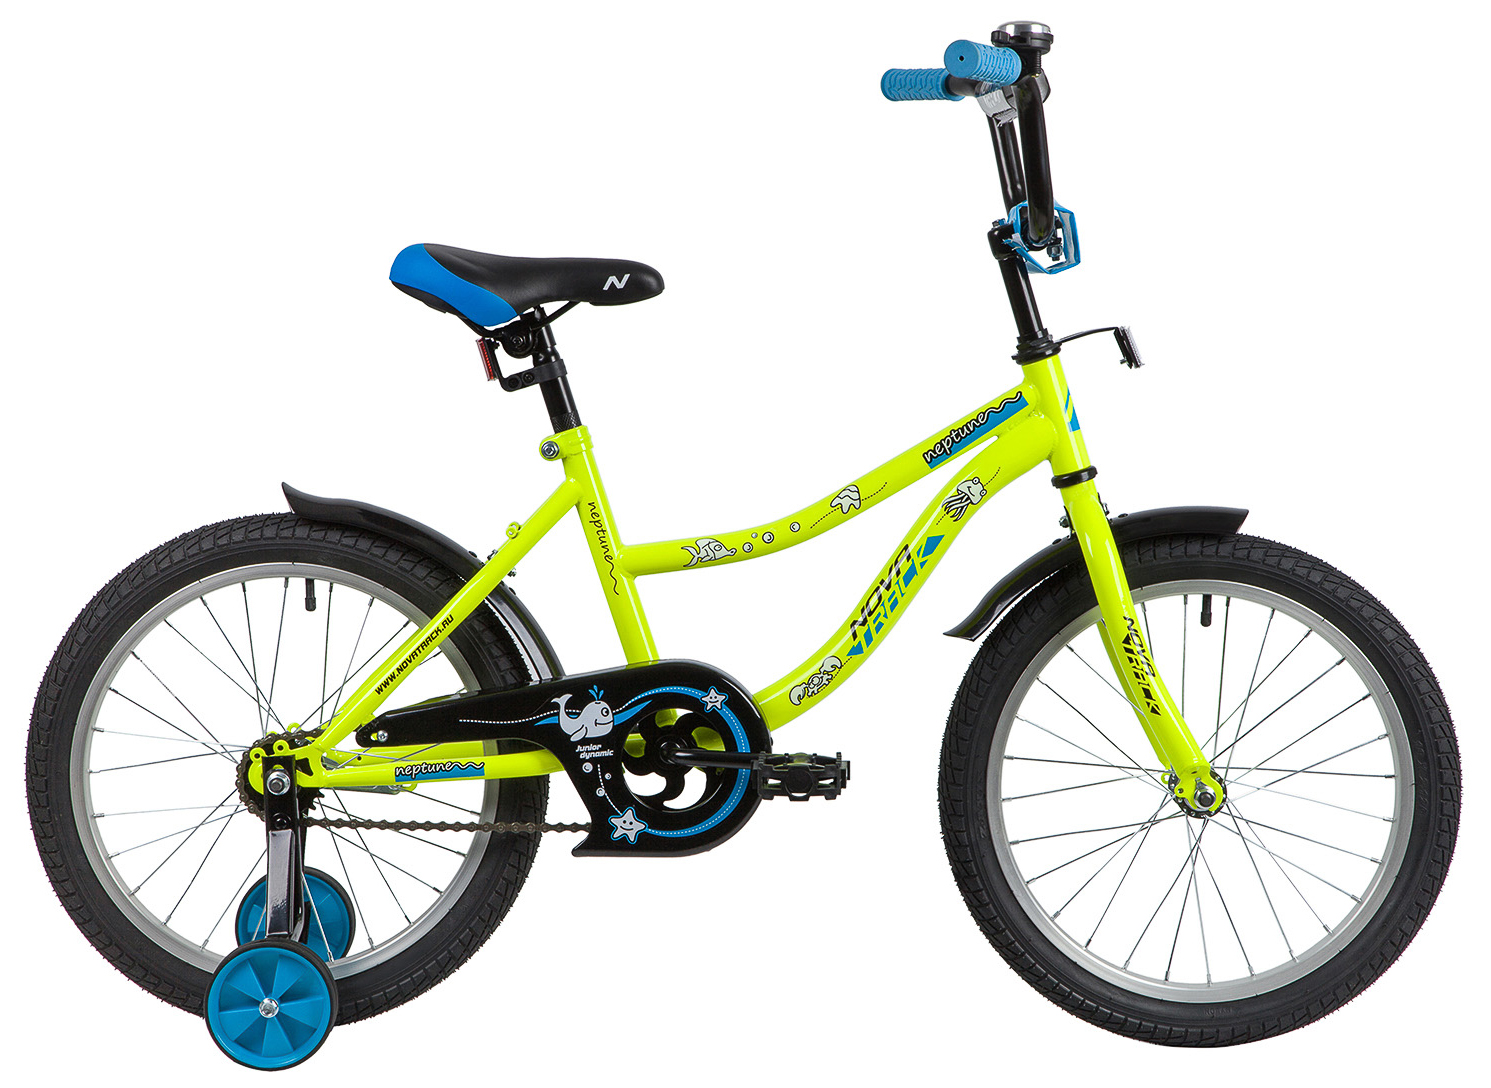  Отзывы о Детском велосипеде Novatrack Neptune 18 2020